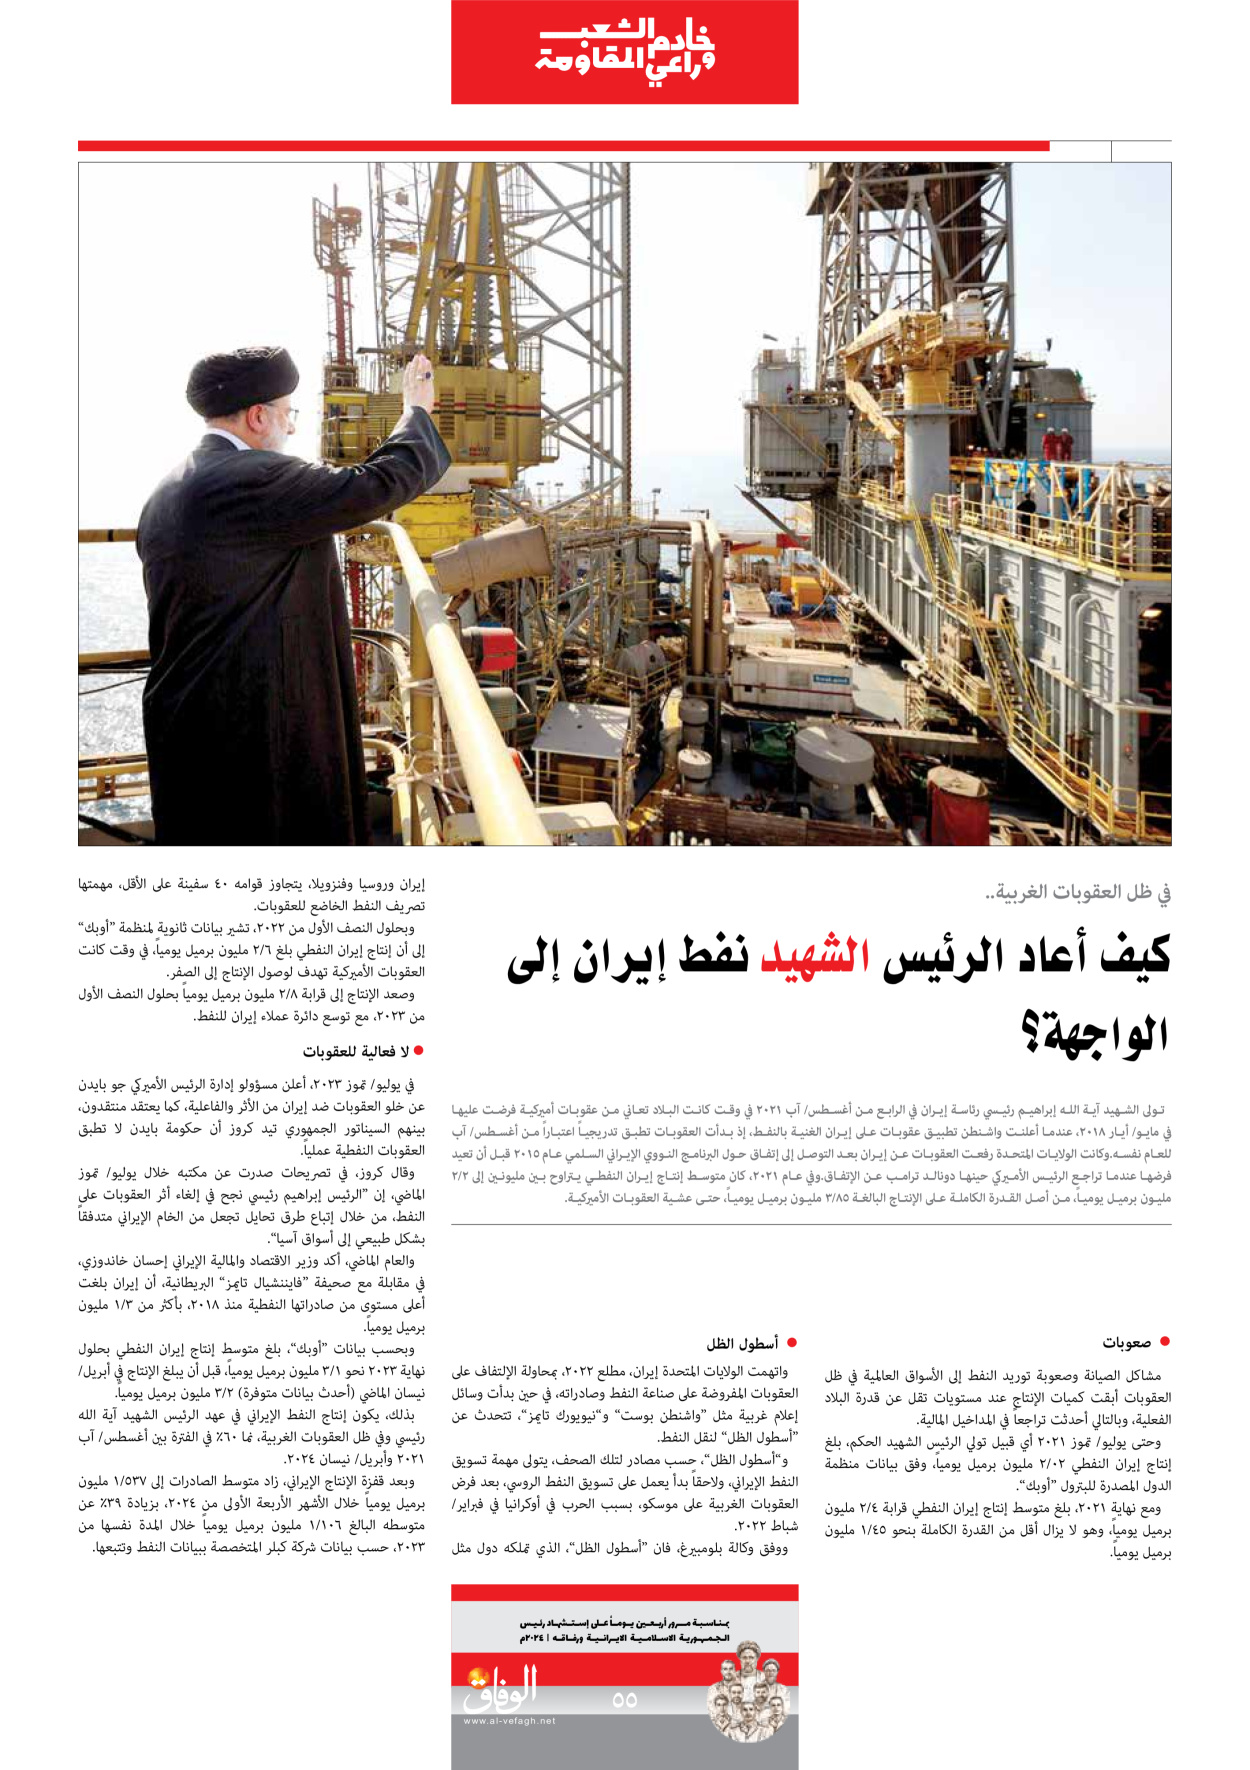 صحیفة ایران الدولیة الوفاق - ملحق ویژه نامه چهلم شهید رییسی - ٢٩ يونيو ٢٠٢٤ - الصفحة ٥٥